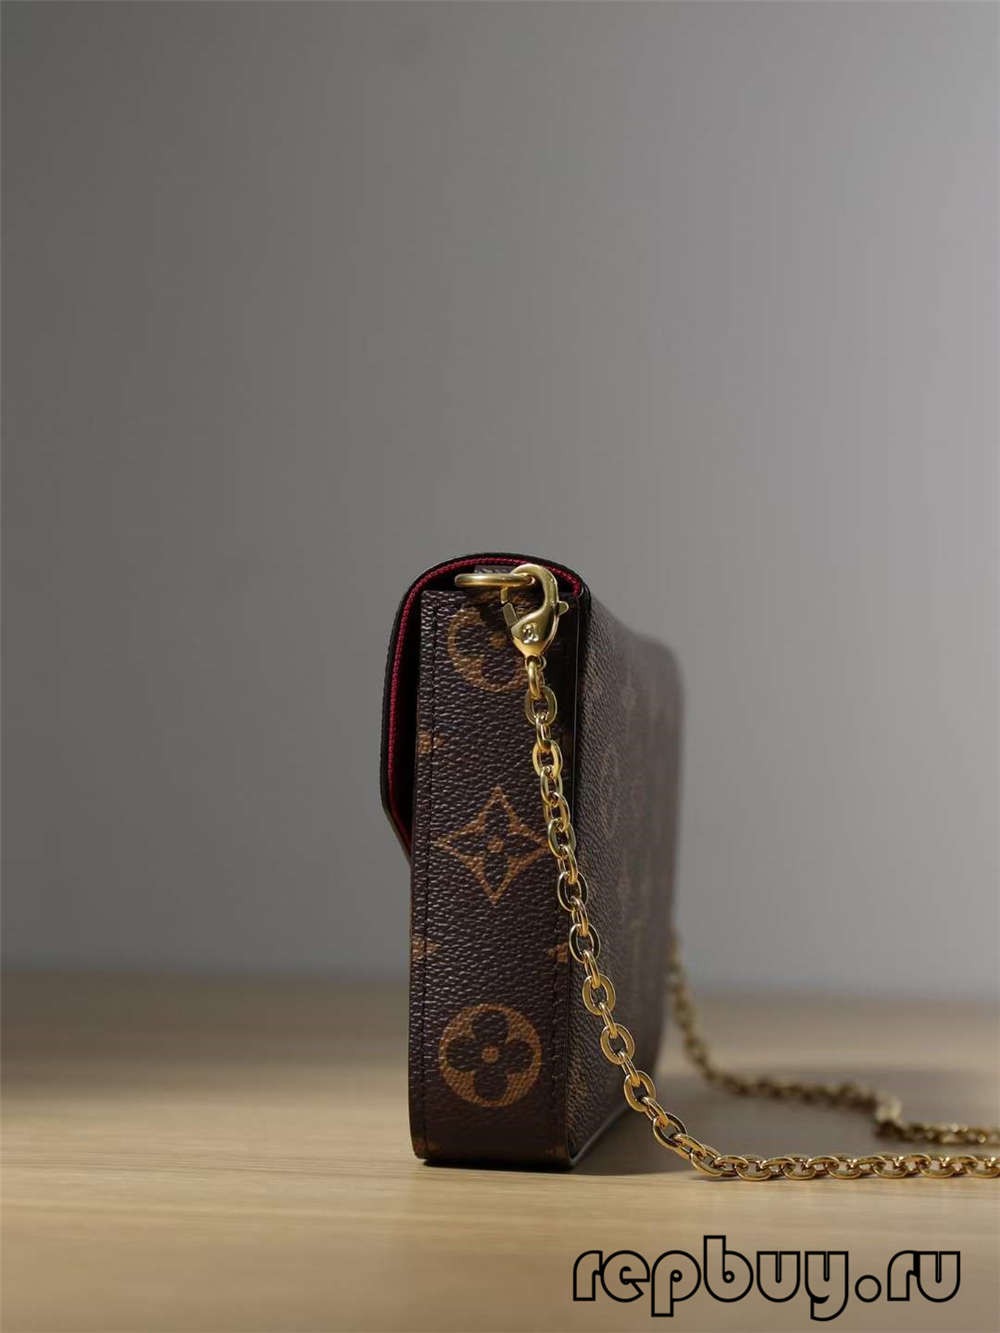 Louis Vuitton POCHETTE FÉLICIE replikaväskor av högsta kvalitet（2022 Senaste）-Bästa kvalitet Fake Louis Vuitton Bag Online Store, Replica designerväska ru